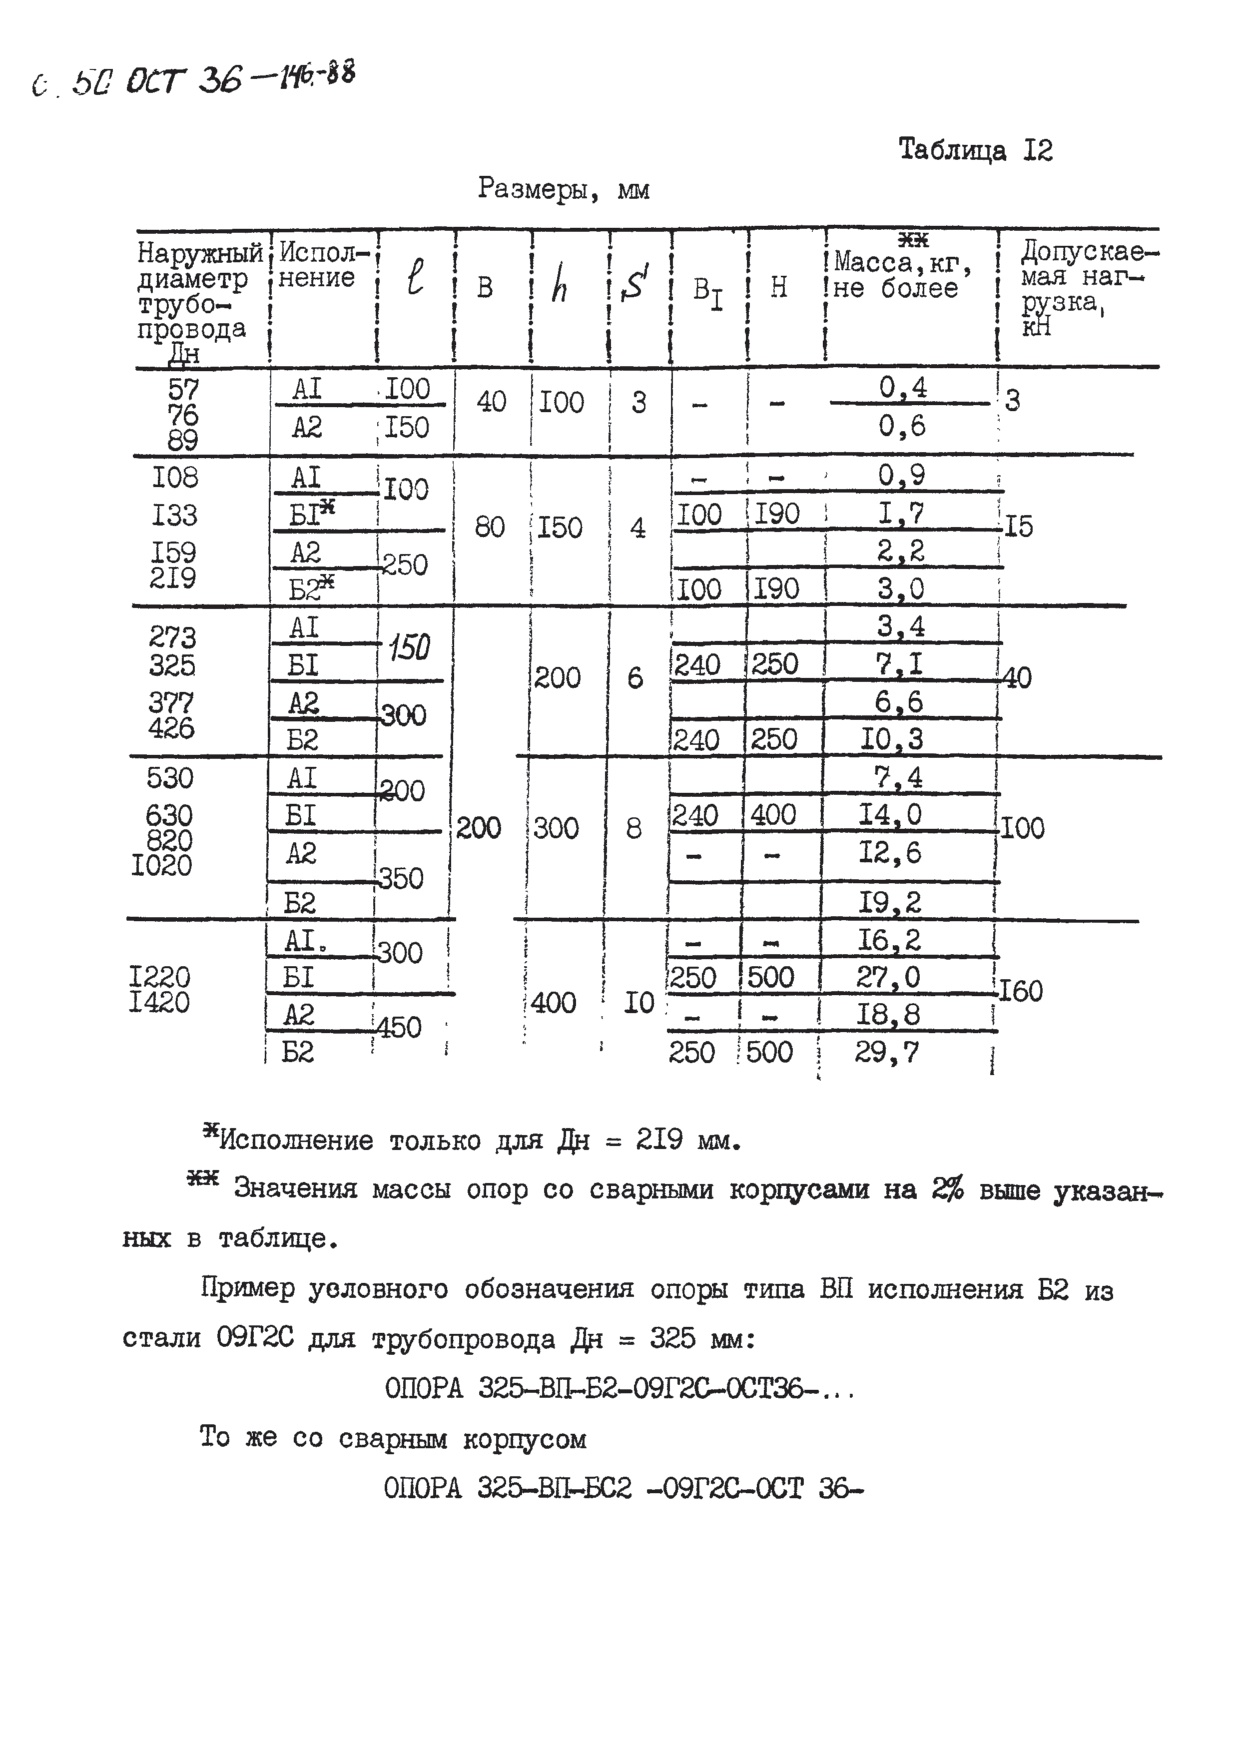 Опора вертикальных трубопроводов ВП ОСТ 36-146-88